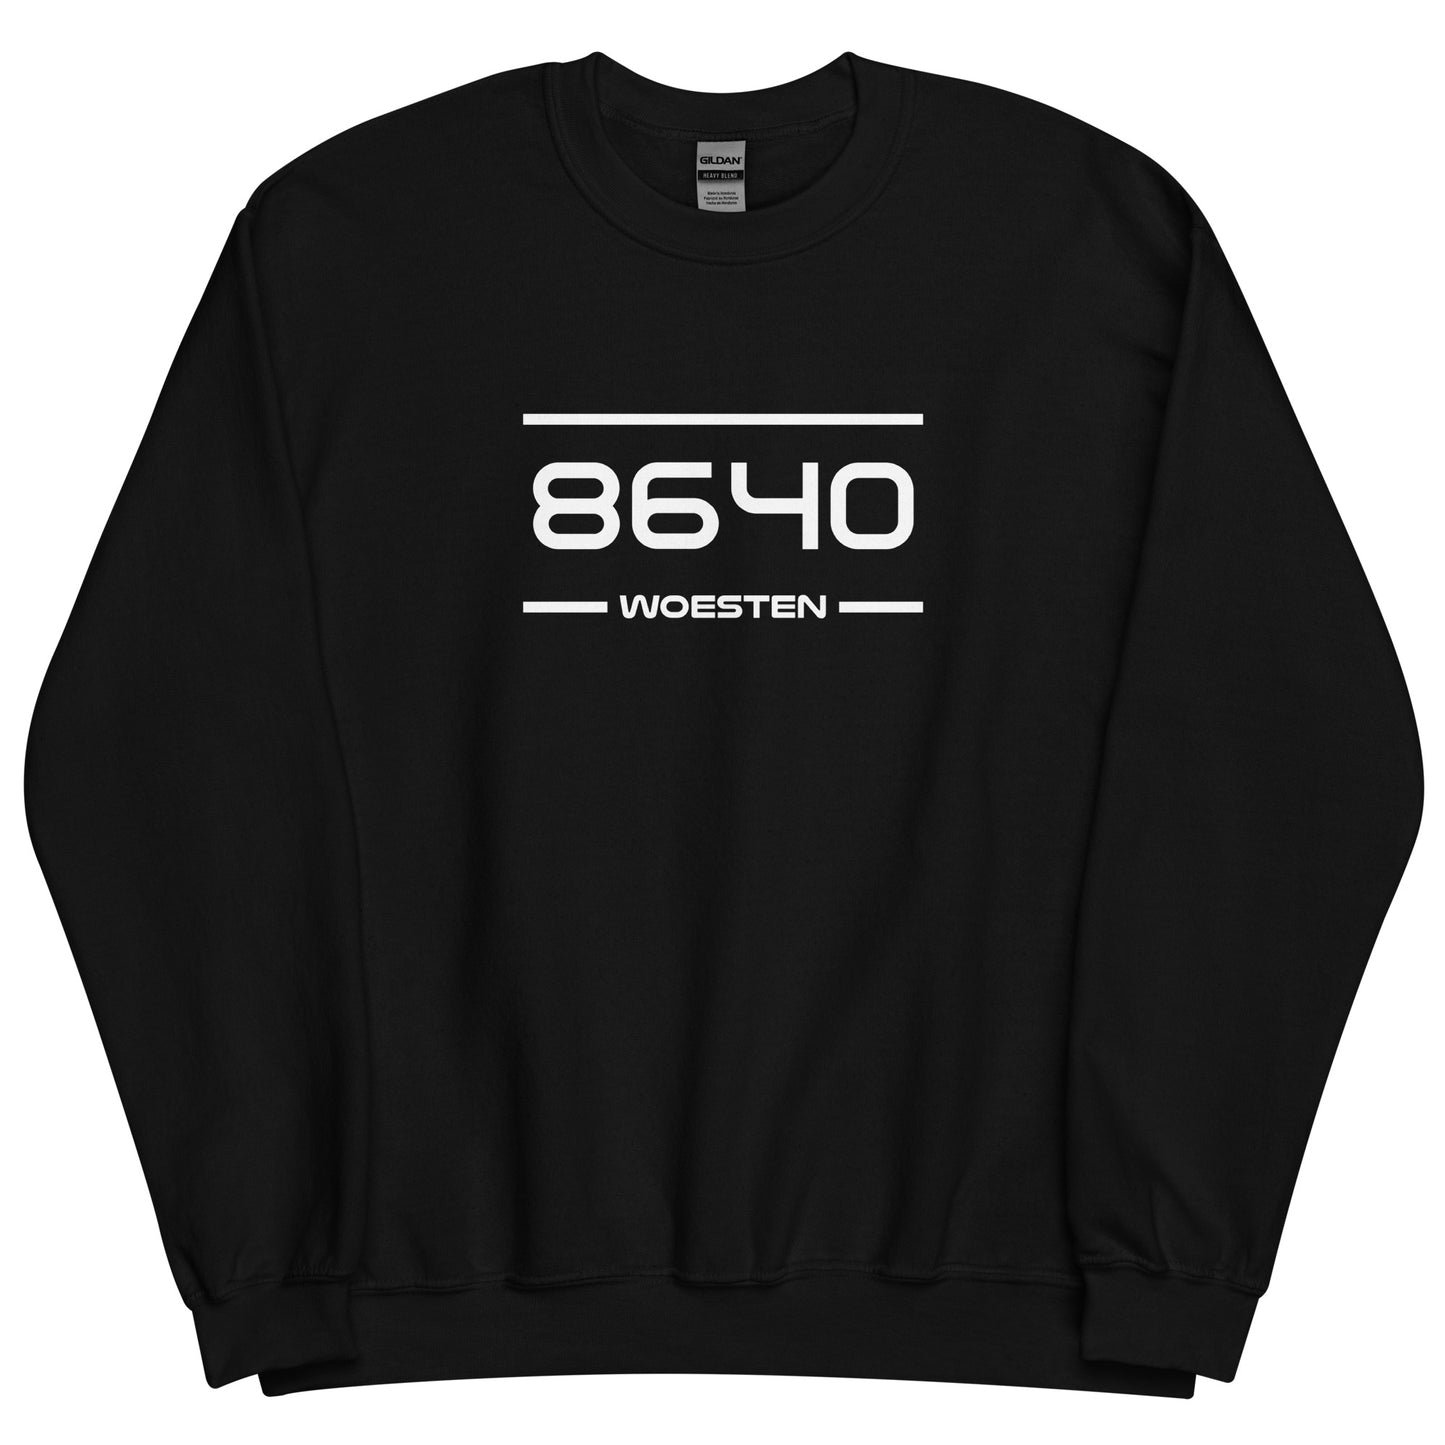 Sweater - 8640 - Woesten (M/V)